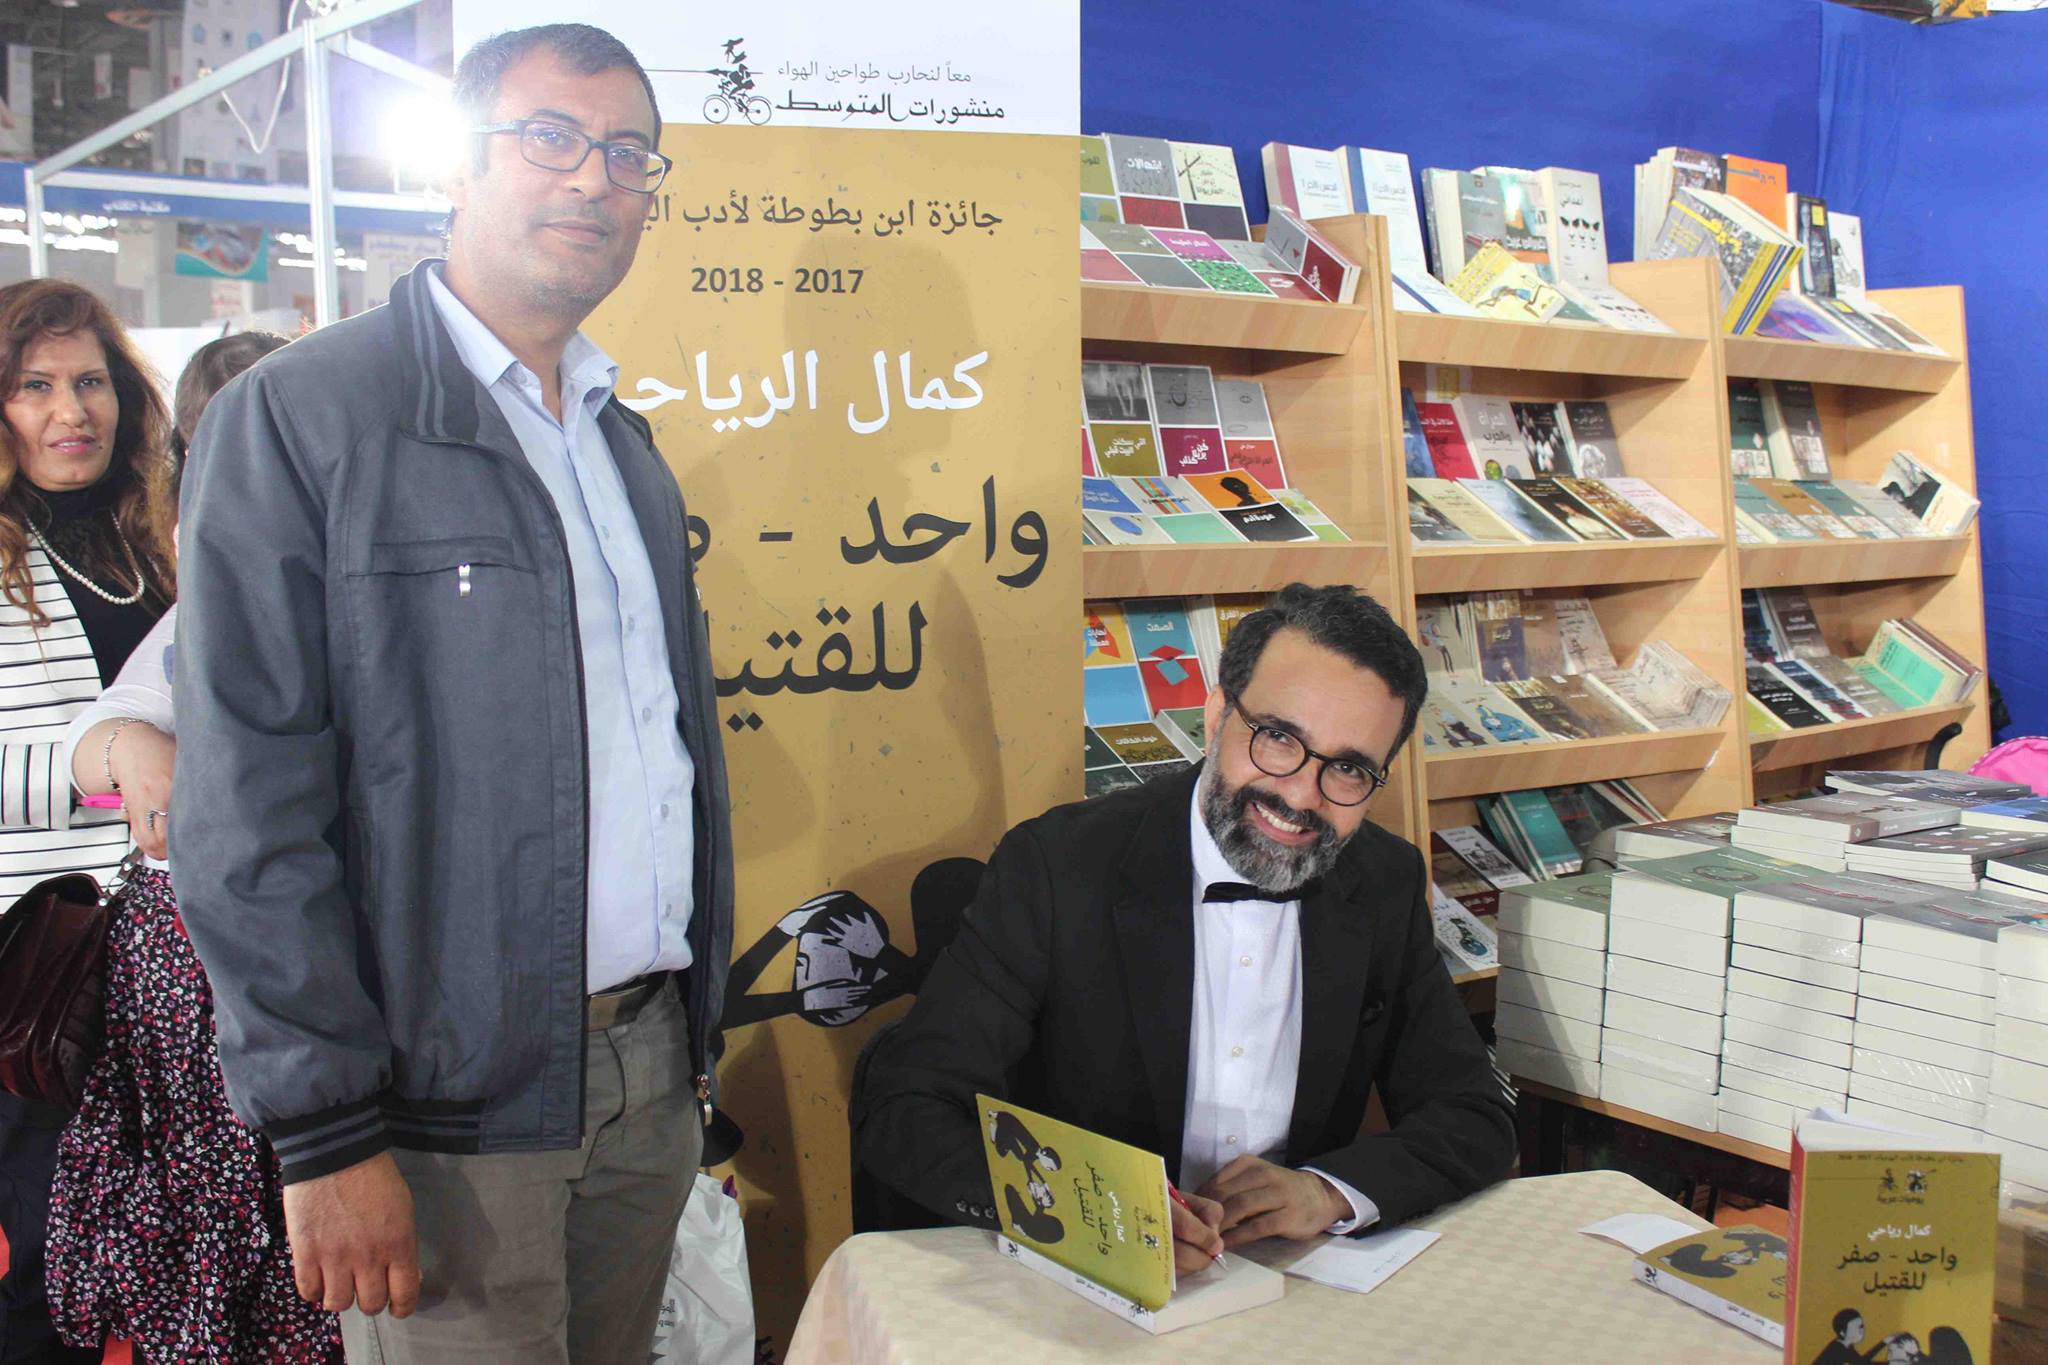 كمال الرياحى يوقع كتابه واحد صفر للقتيل الفائز بجائزة ابن بطوطة فى معرض تونس (1)